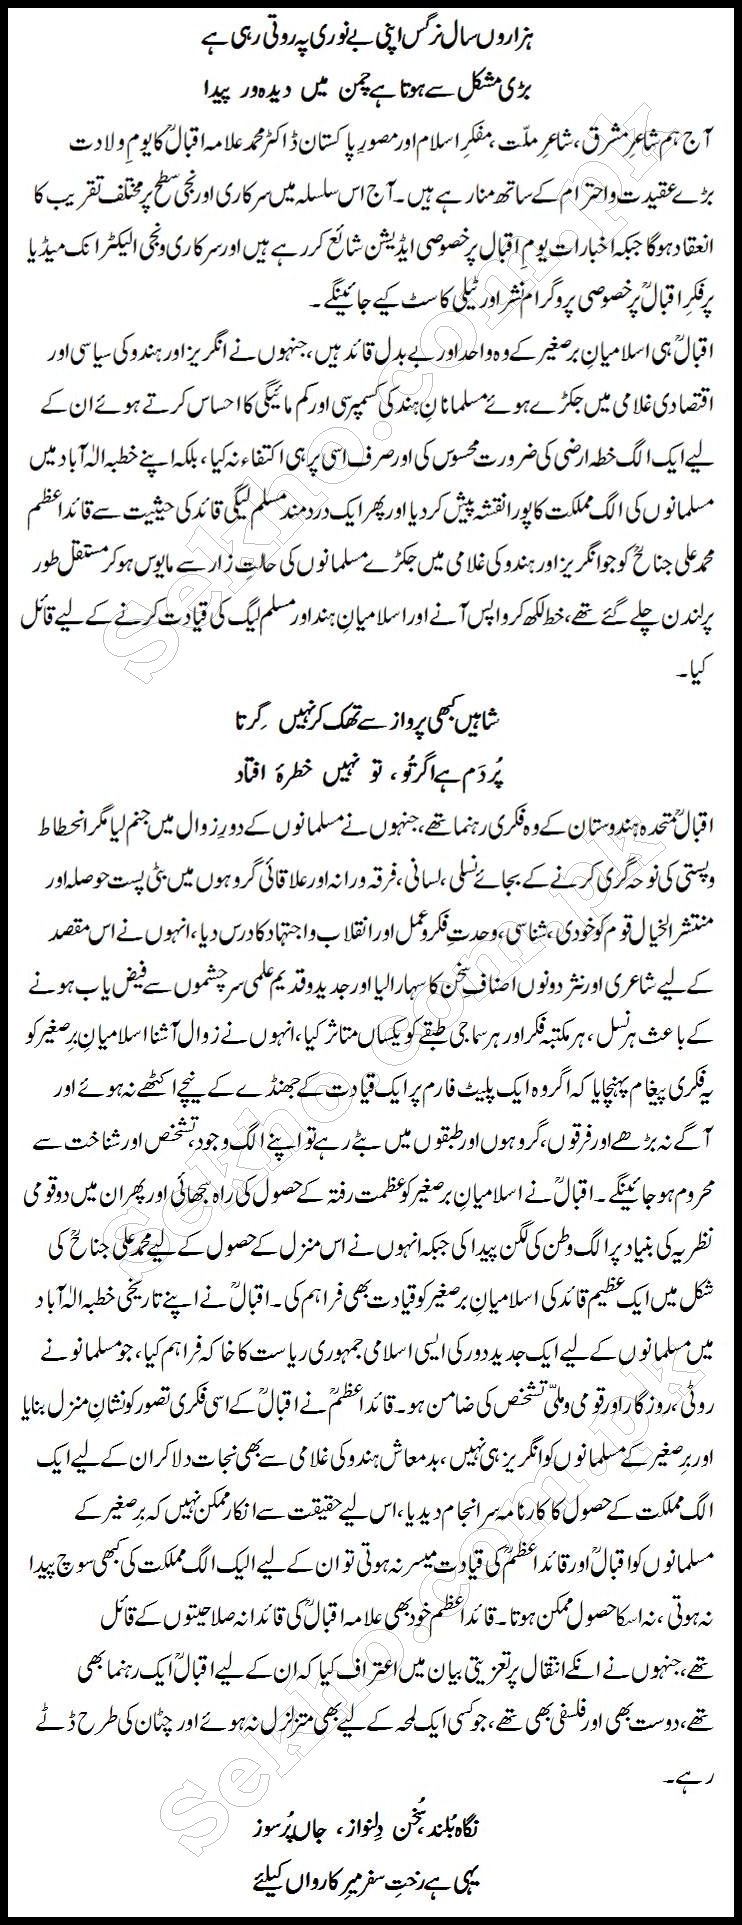 Allama Iqbal Day Speech In Urdu